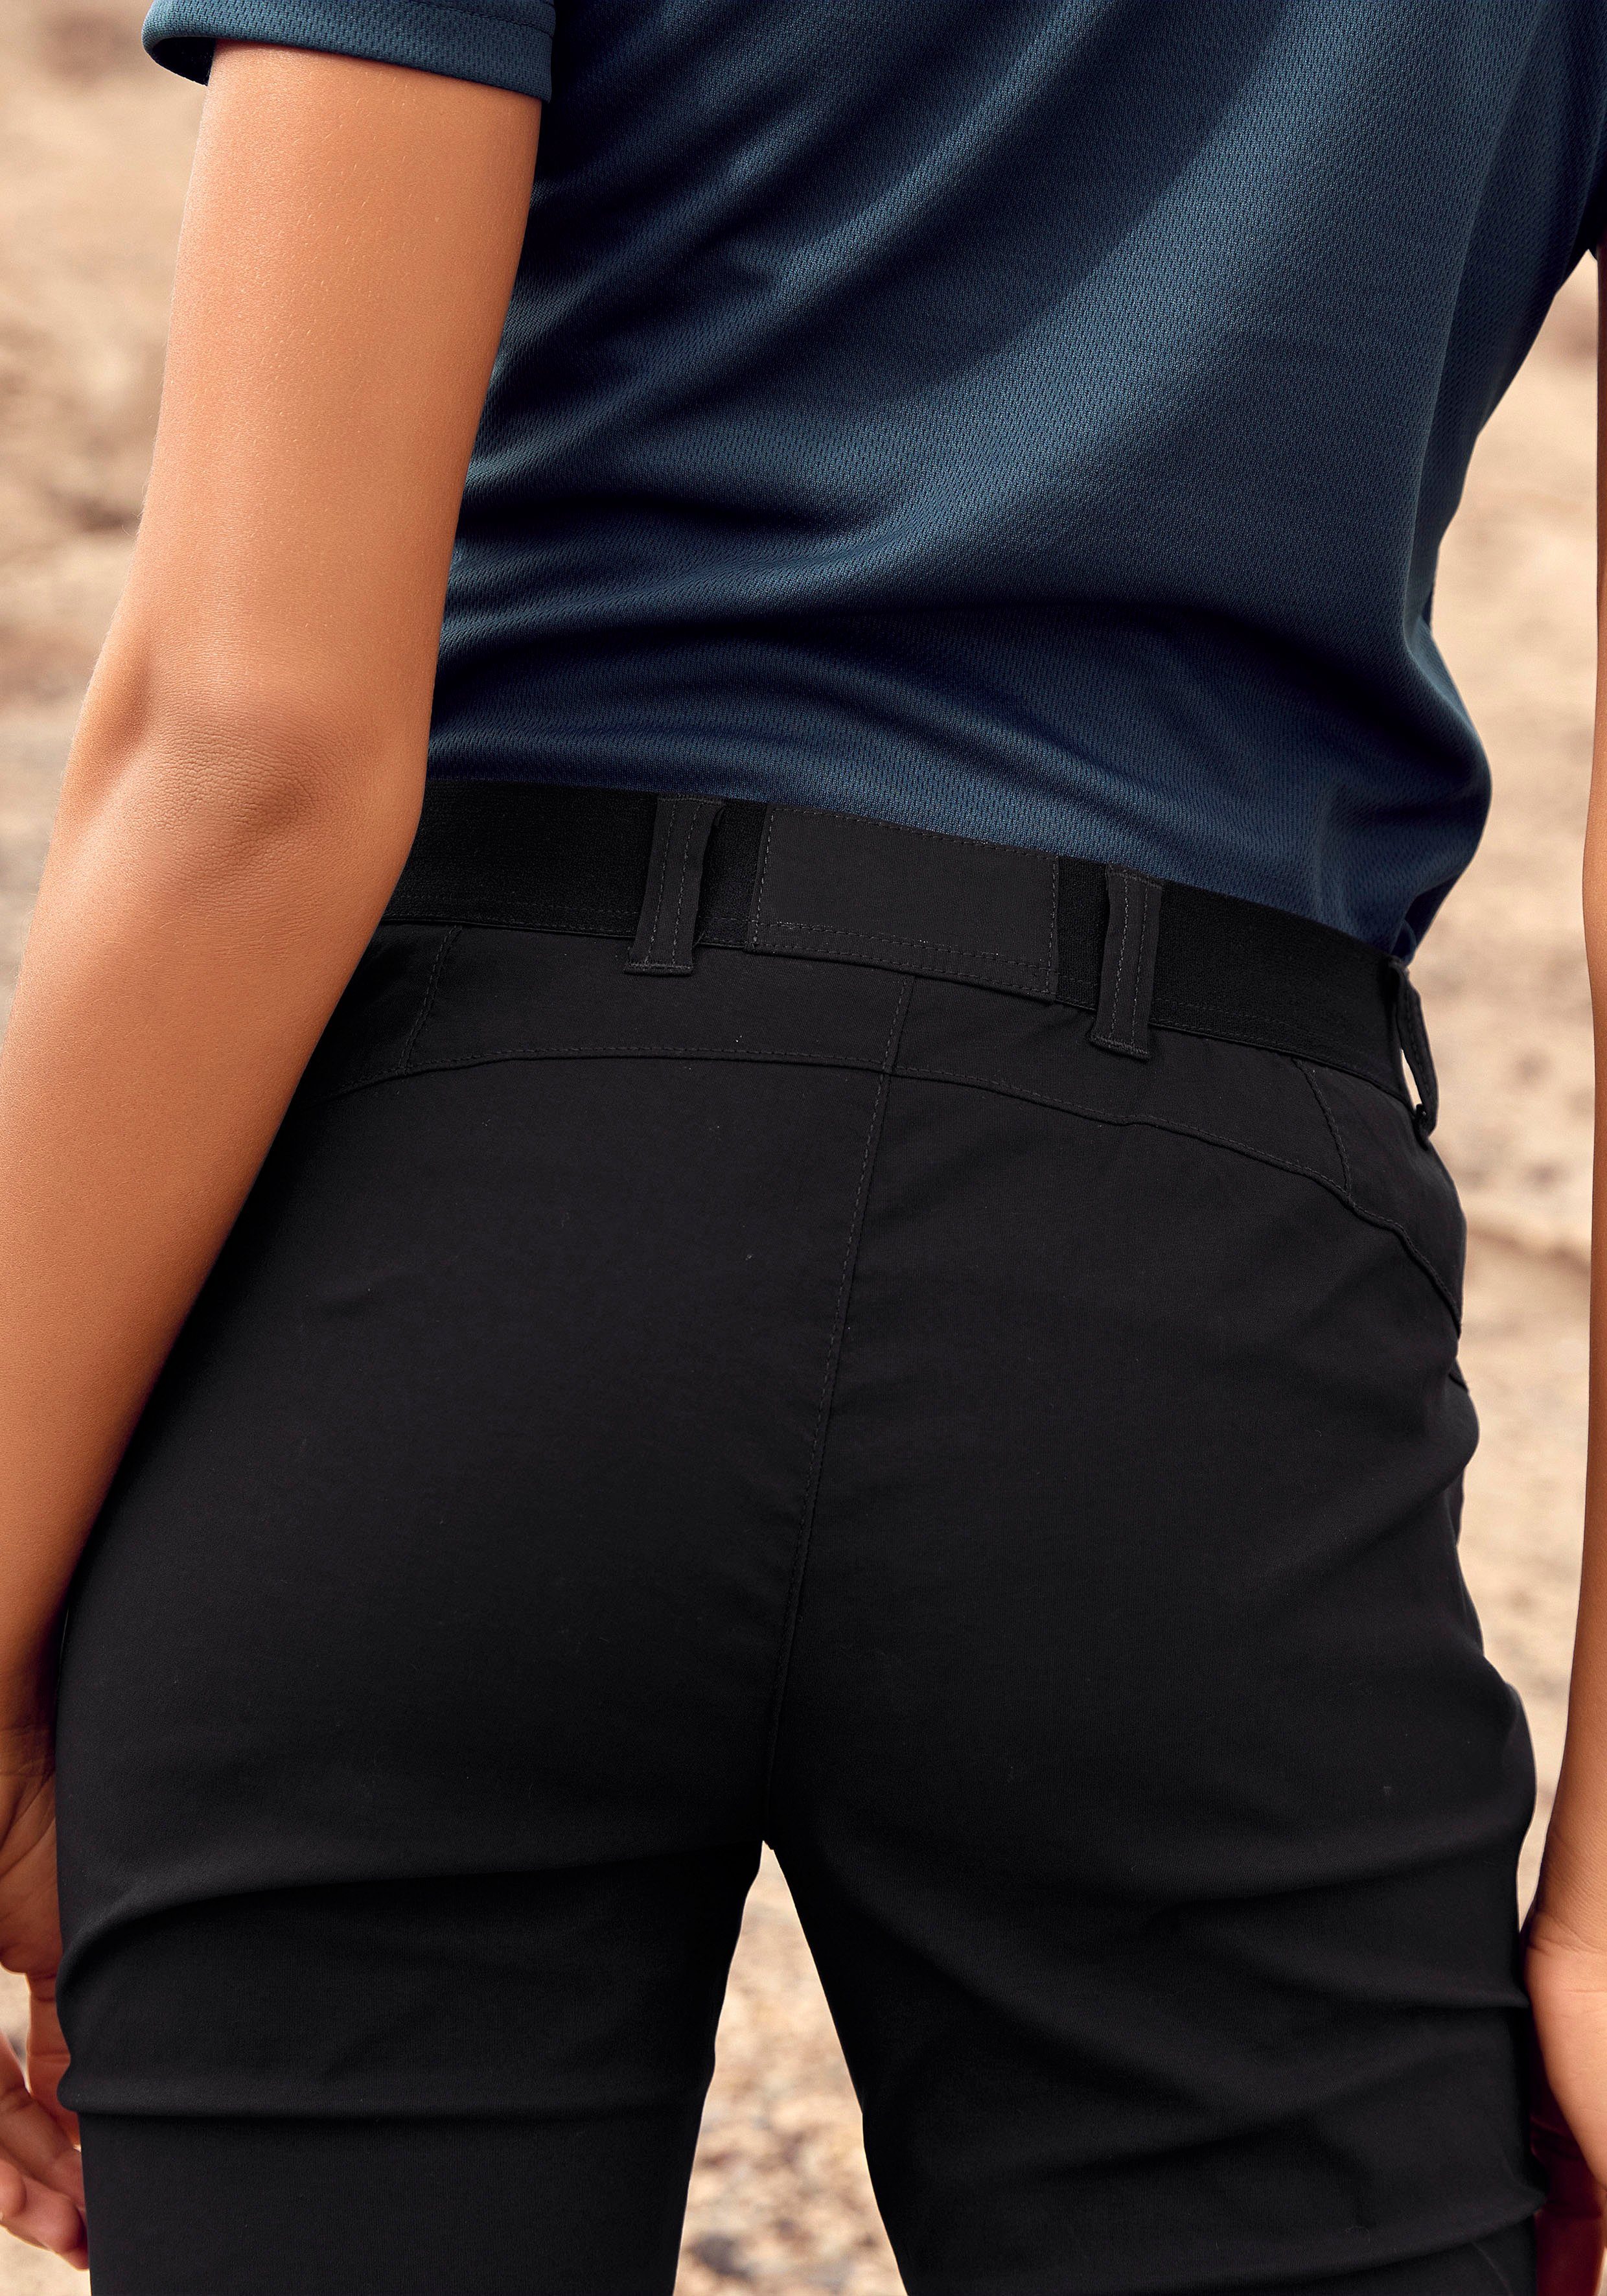 ACTIVE LASCANA 3 schwarz Trekkinghose mit Zipper Taschen